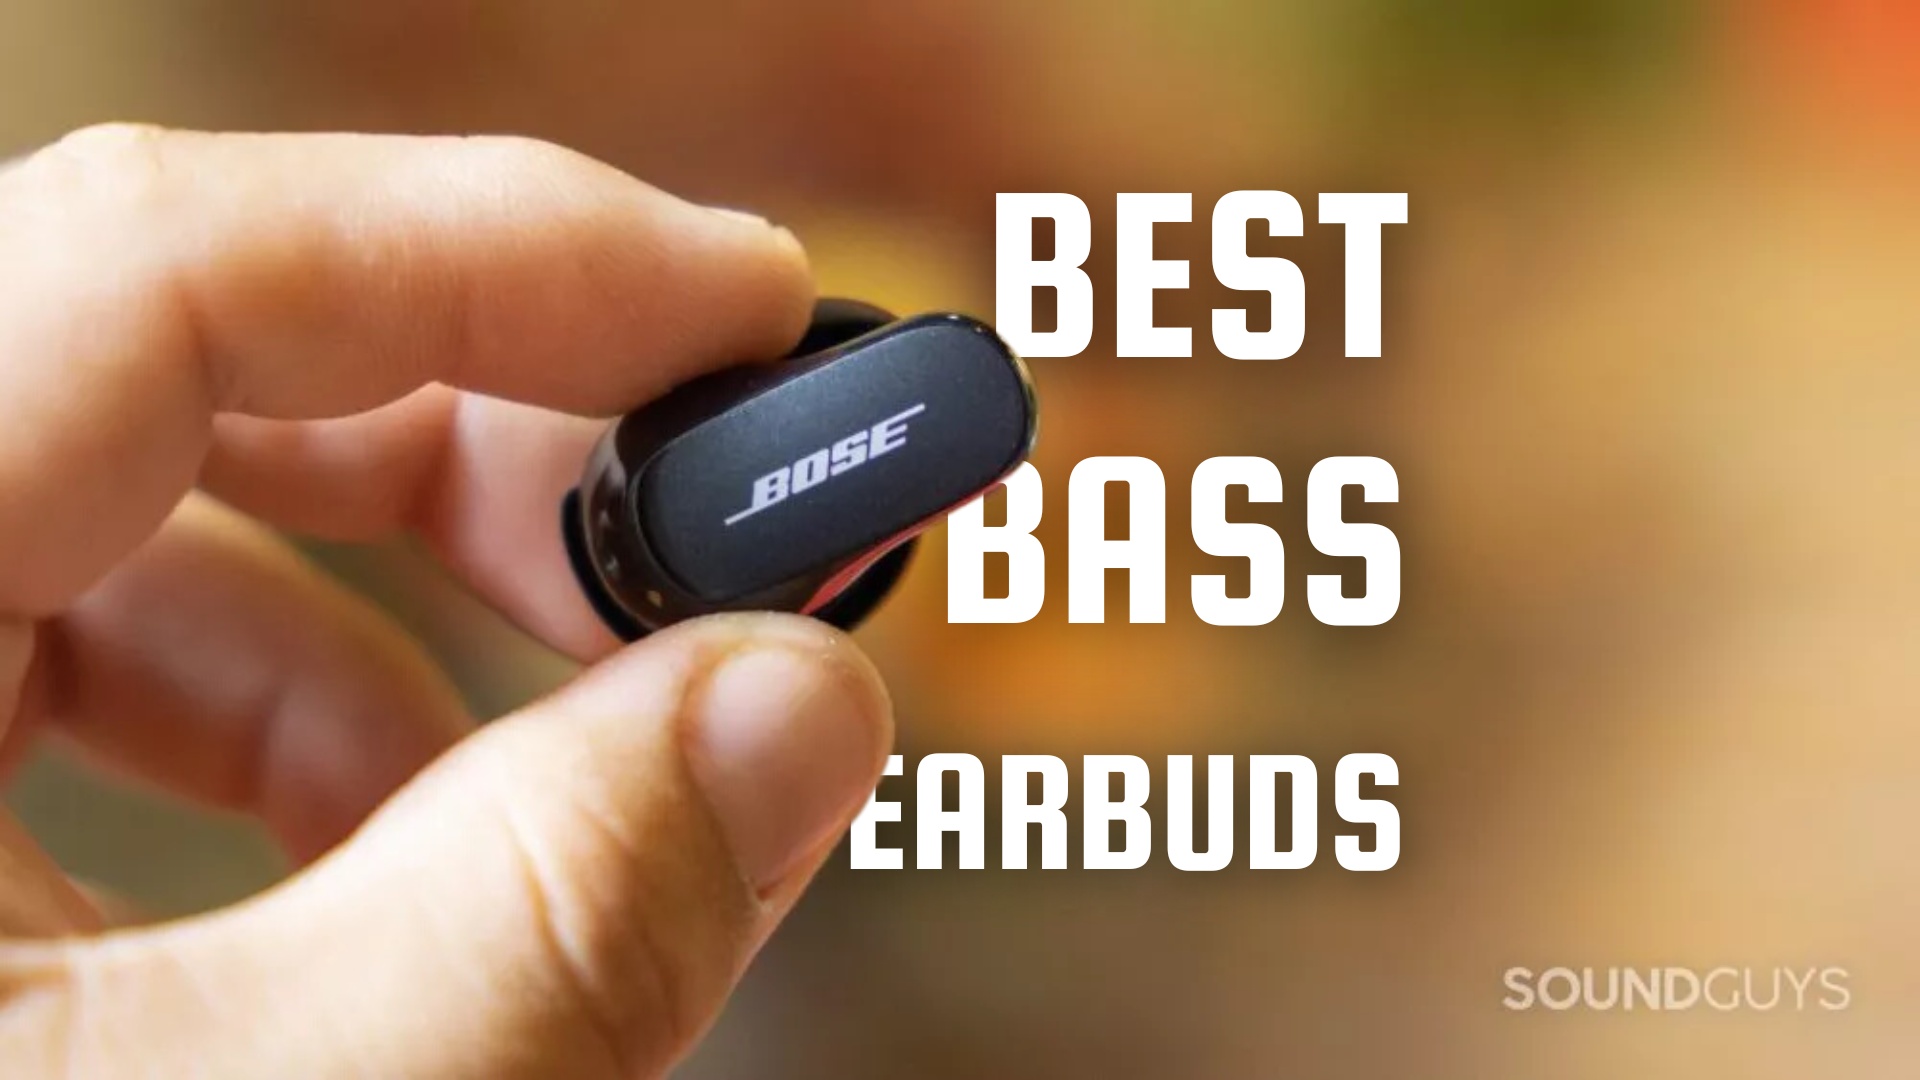 Best bass earbuds